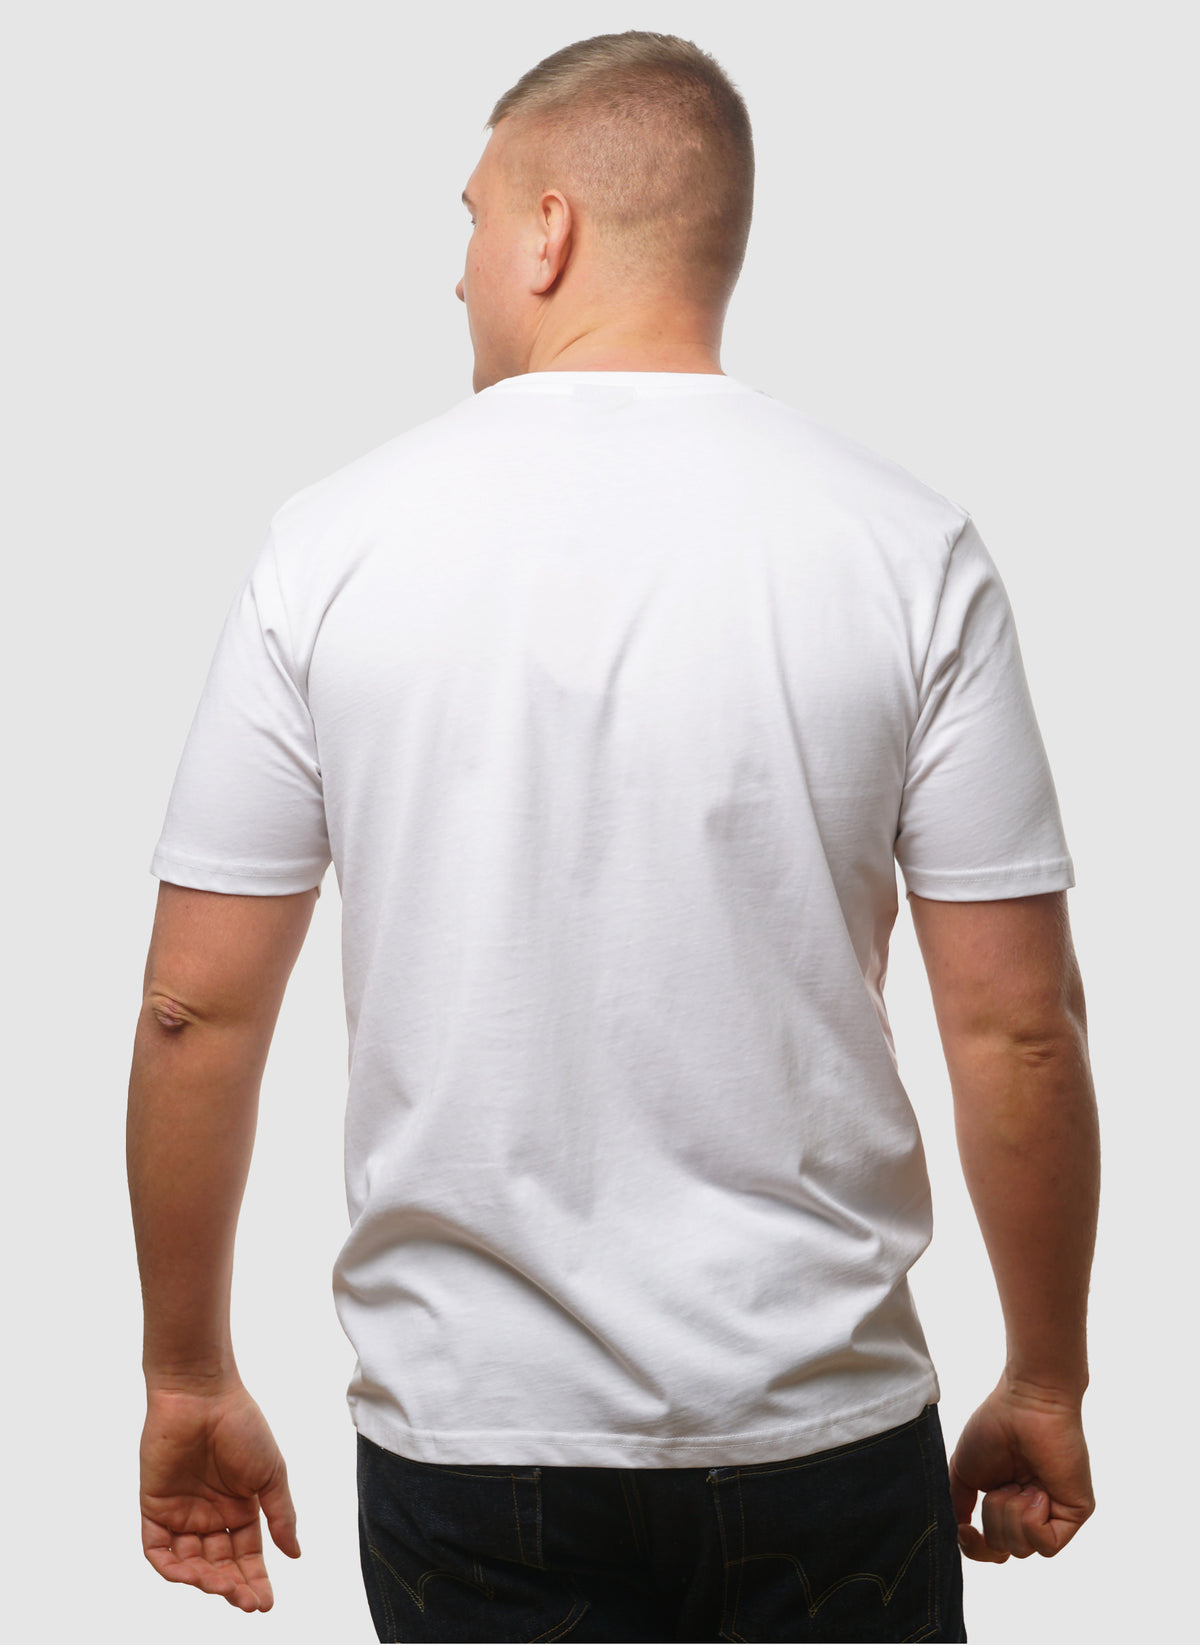 Compellioni T-Shirt - White